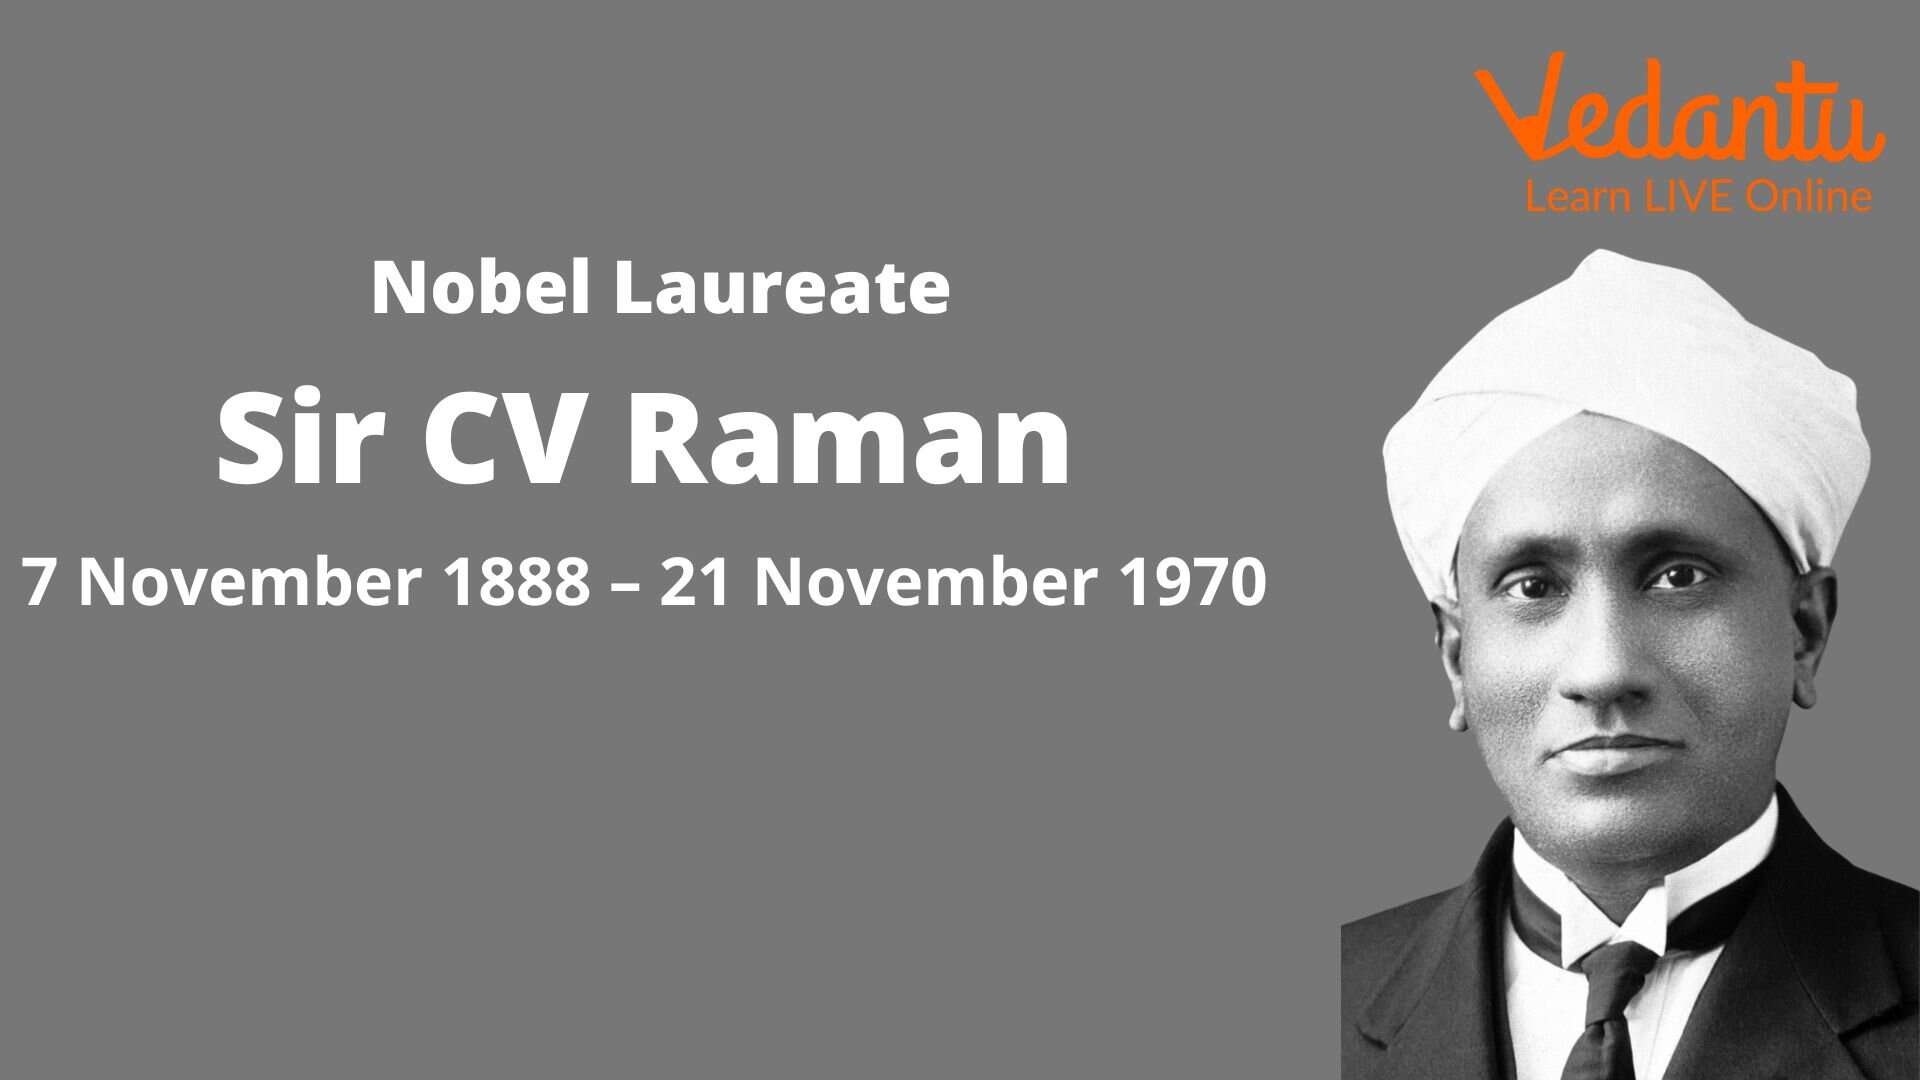 Sir CV Raman